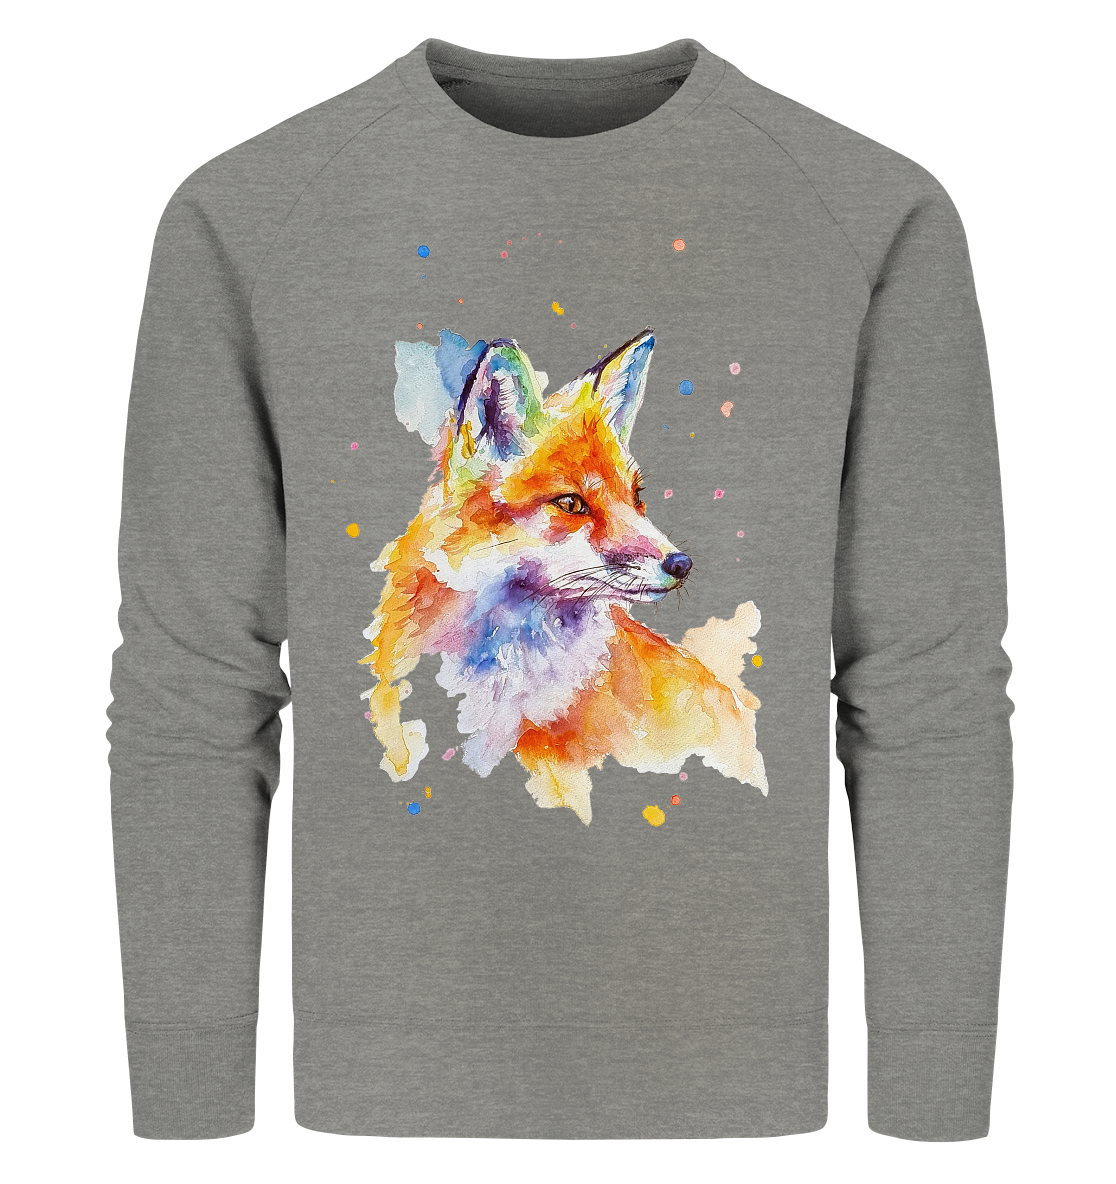 Bunter Fuchs - Organic Sweatshirt